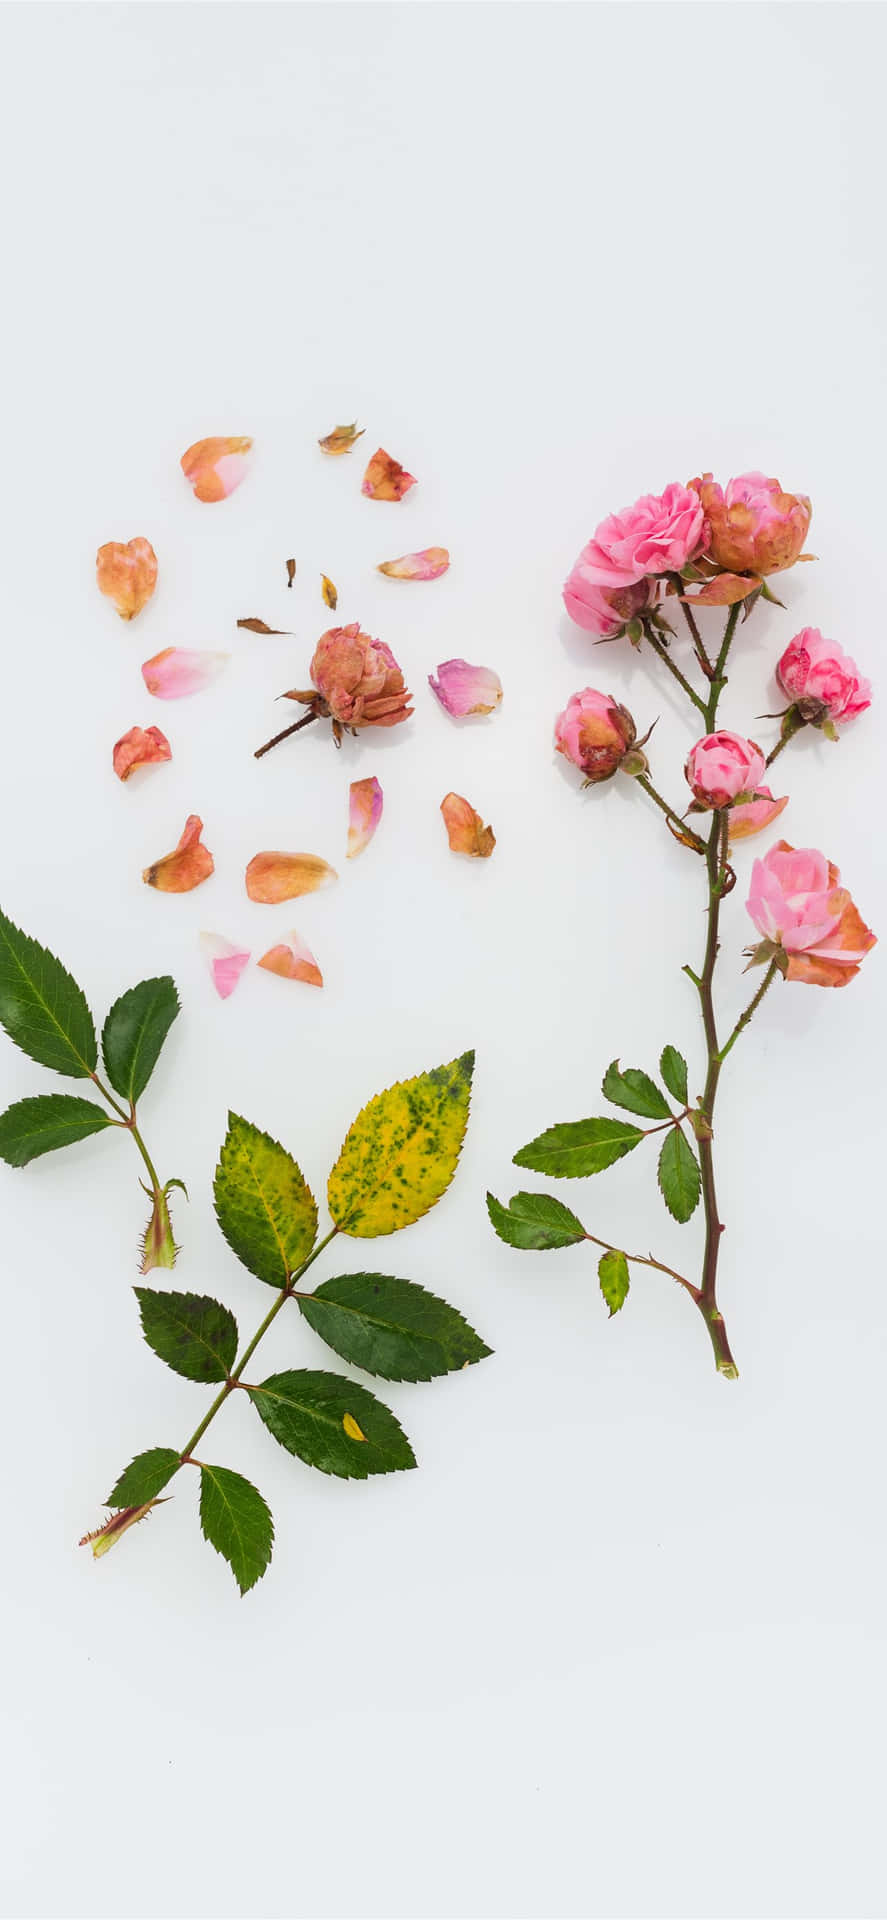 Unaflor Bonita, Colorida Y Vibrante En Plena Floración Fondo de pantalla